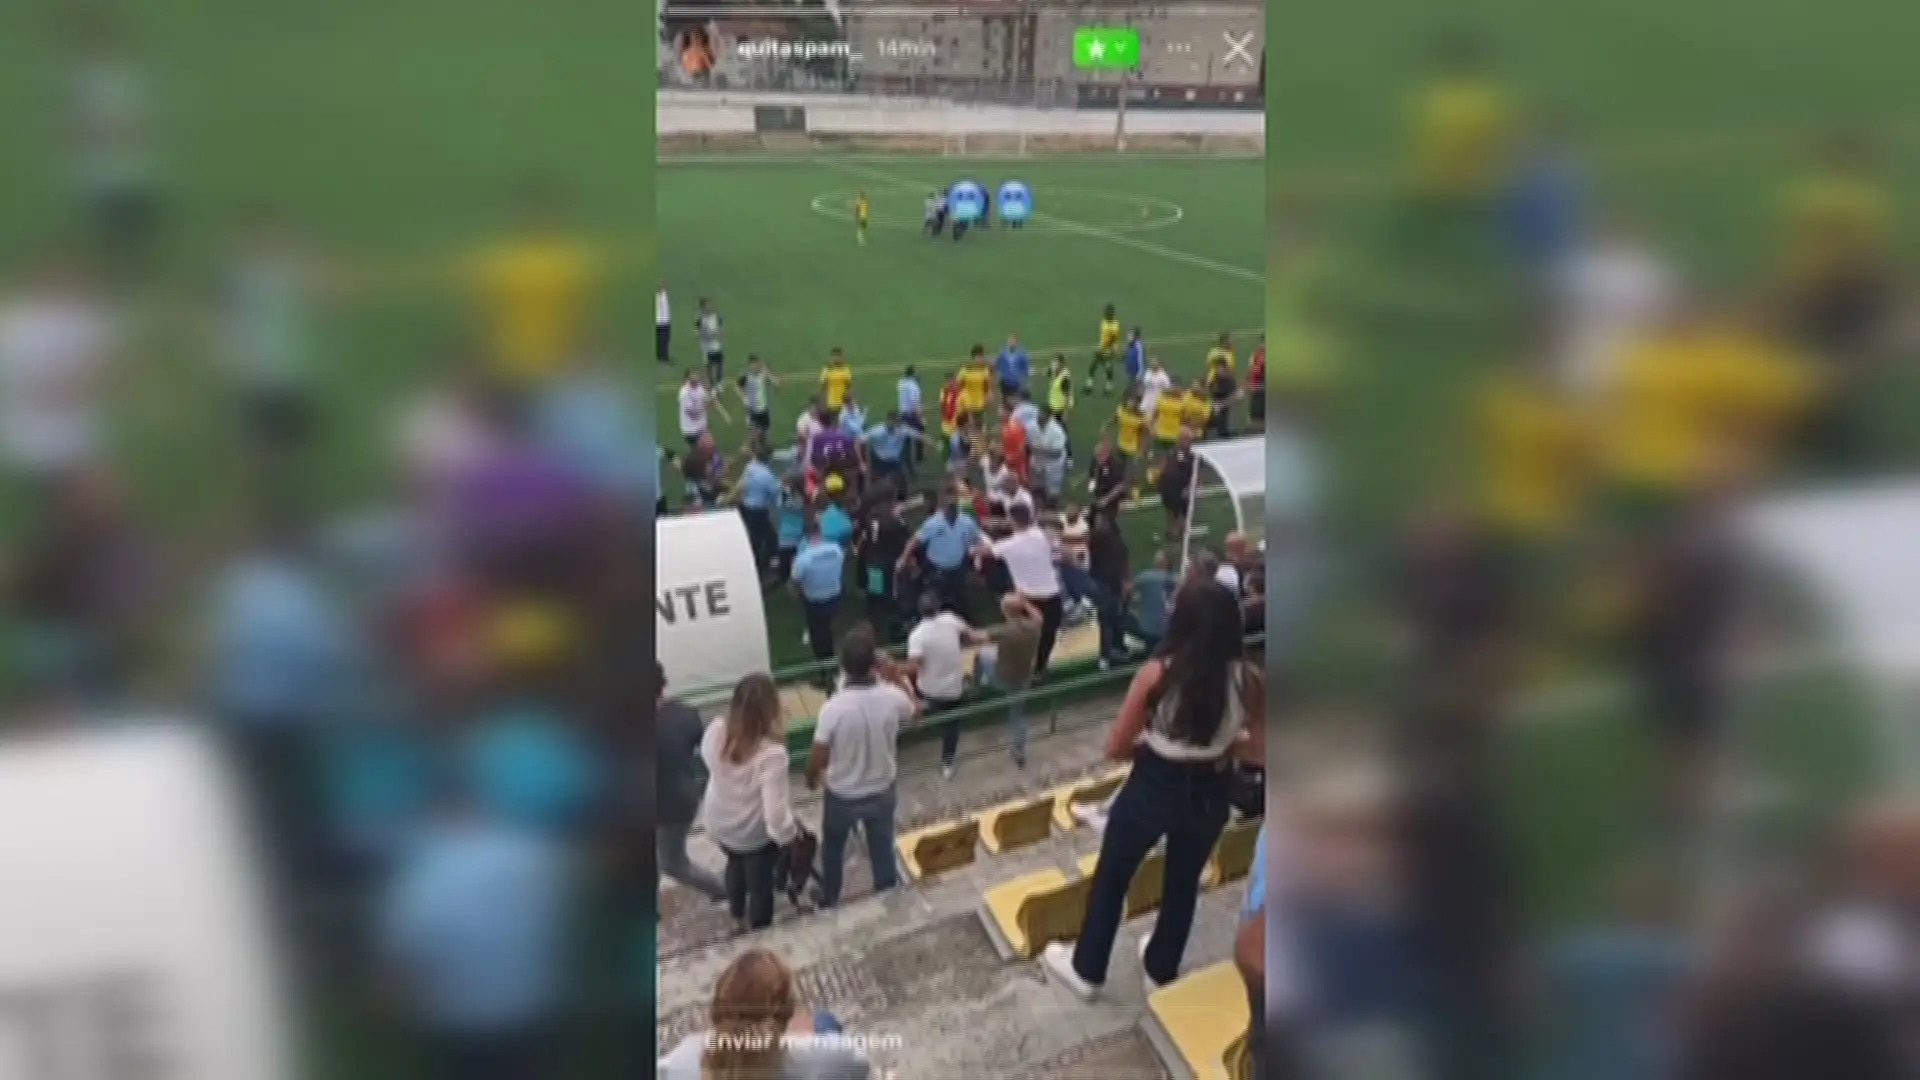 IGAI abre inquérito à atuação da PSP no final do jogo de futebol no Montijo